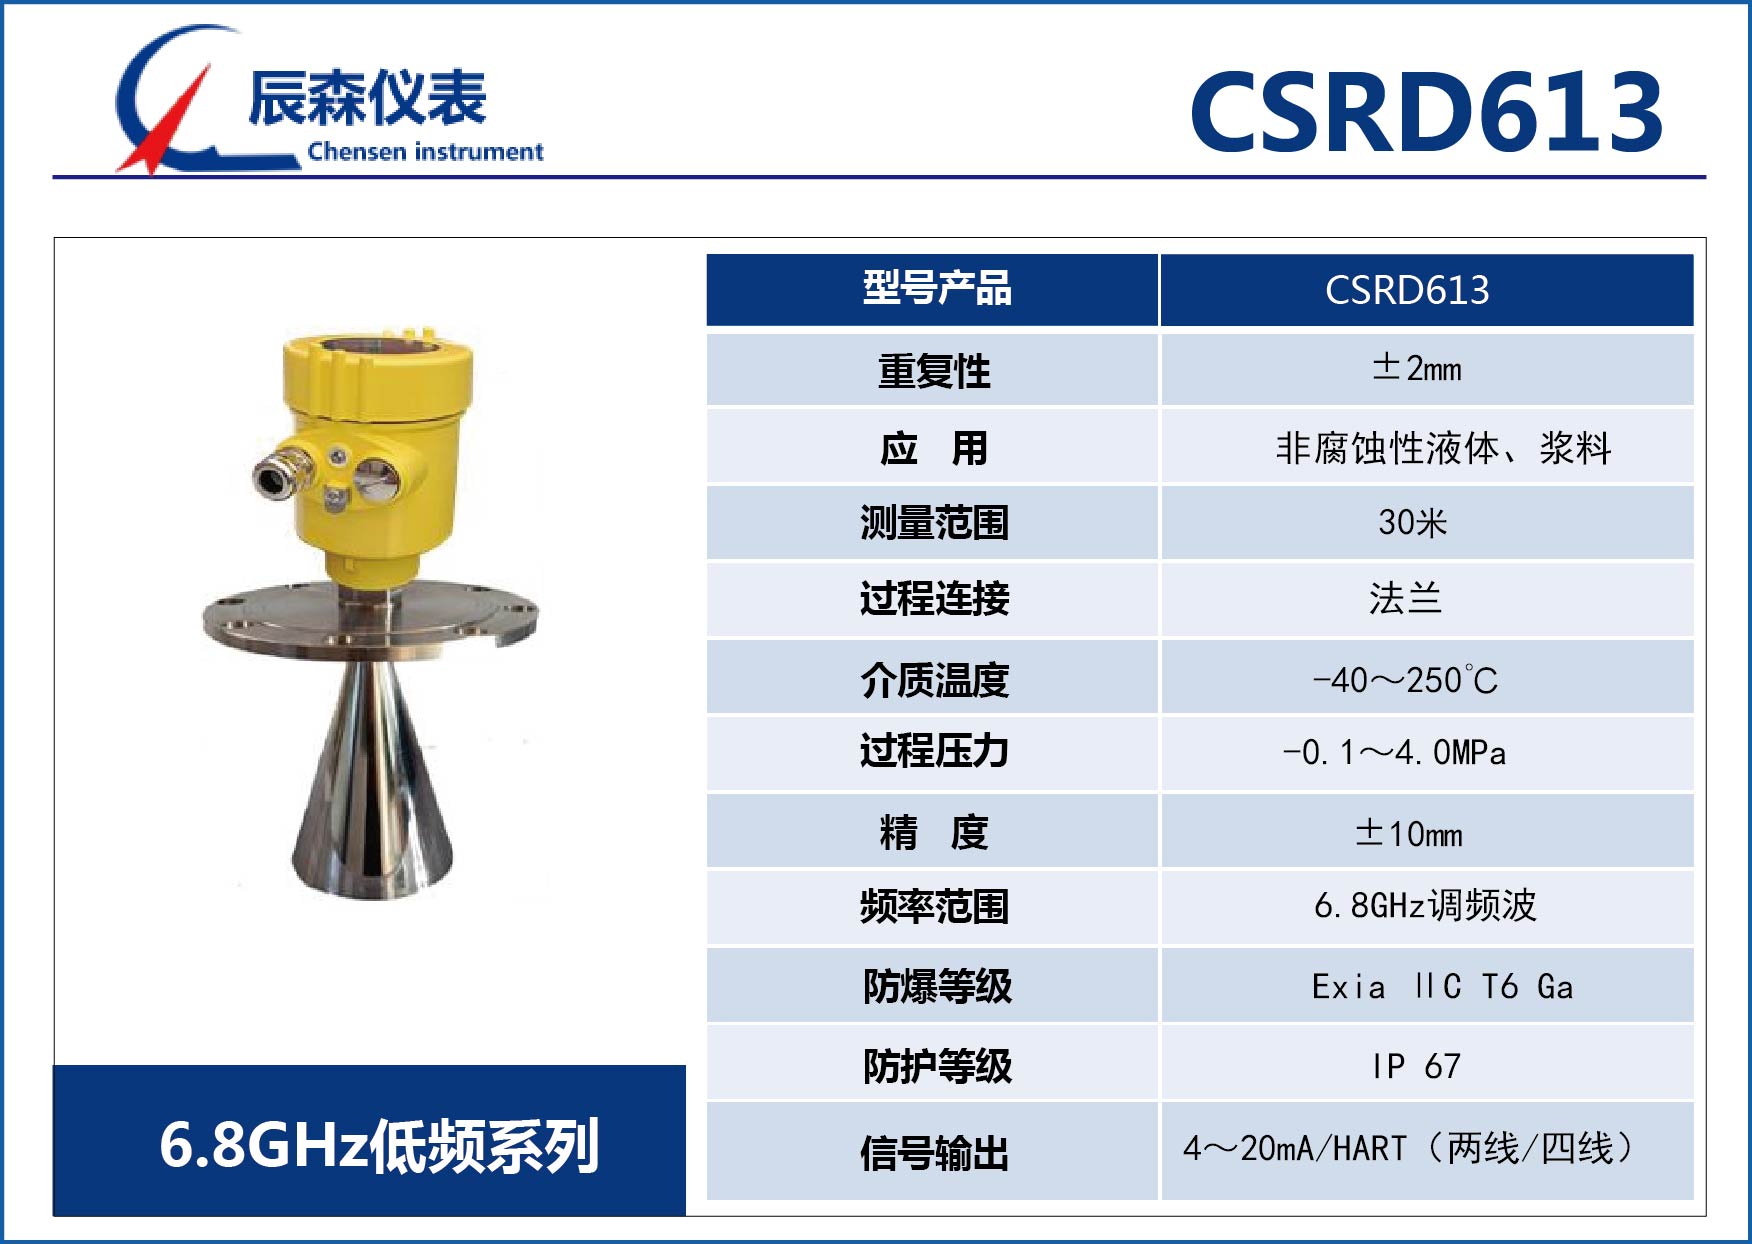 低頻雷達物位計CSRD613